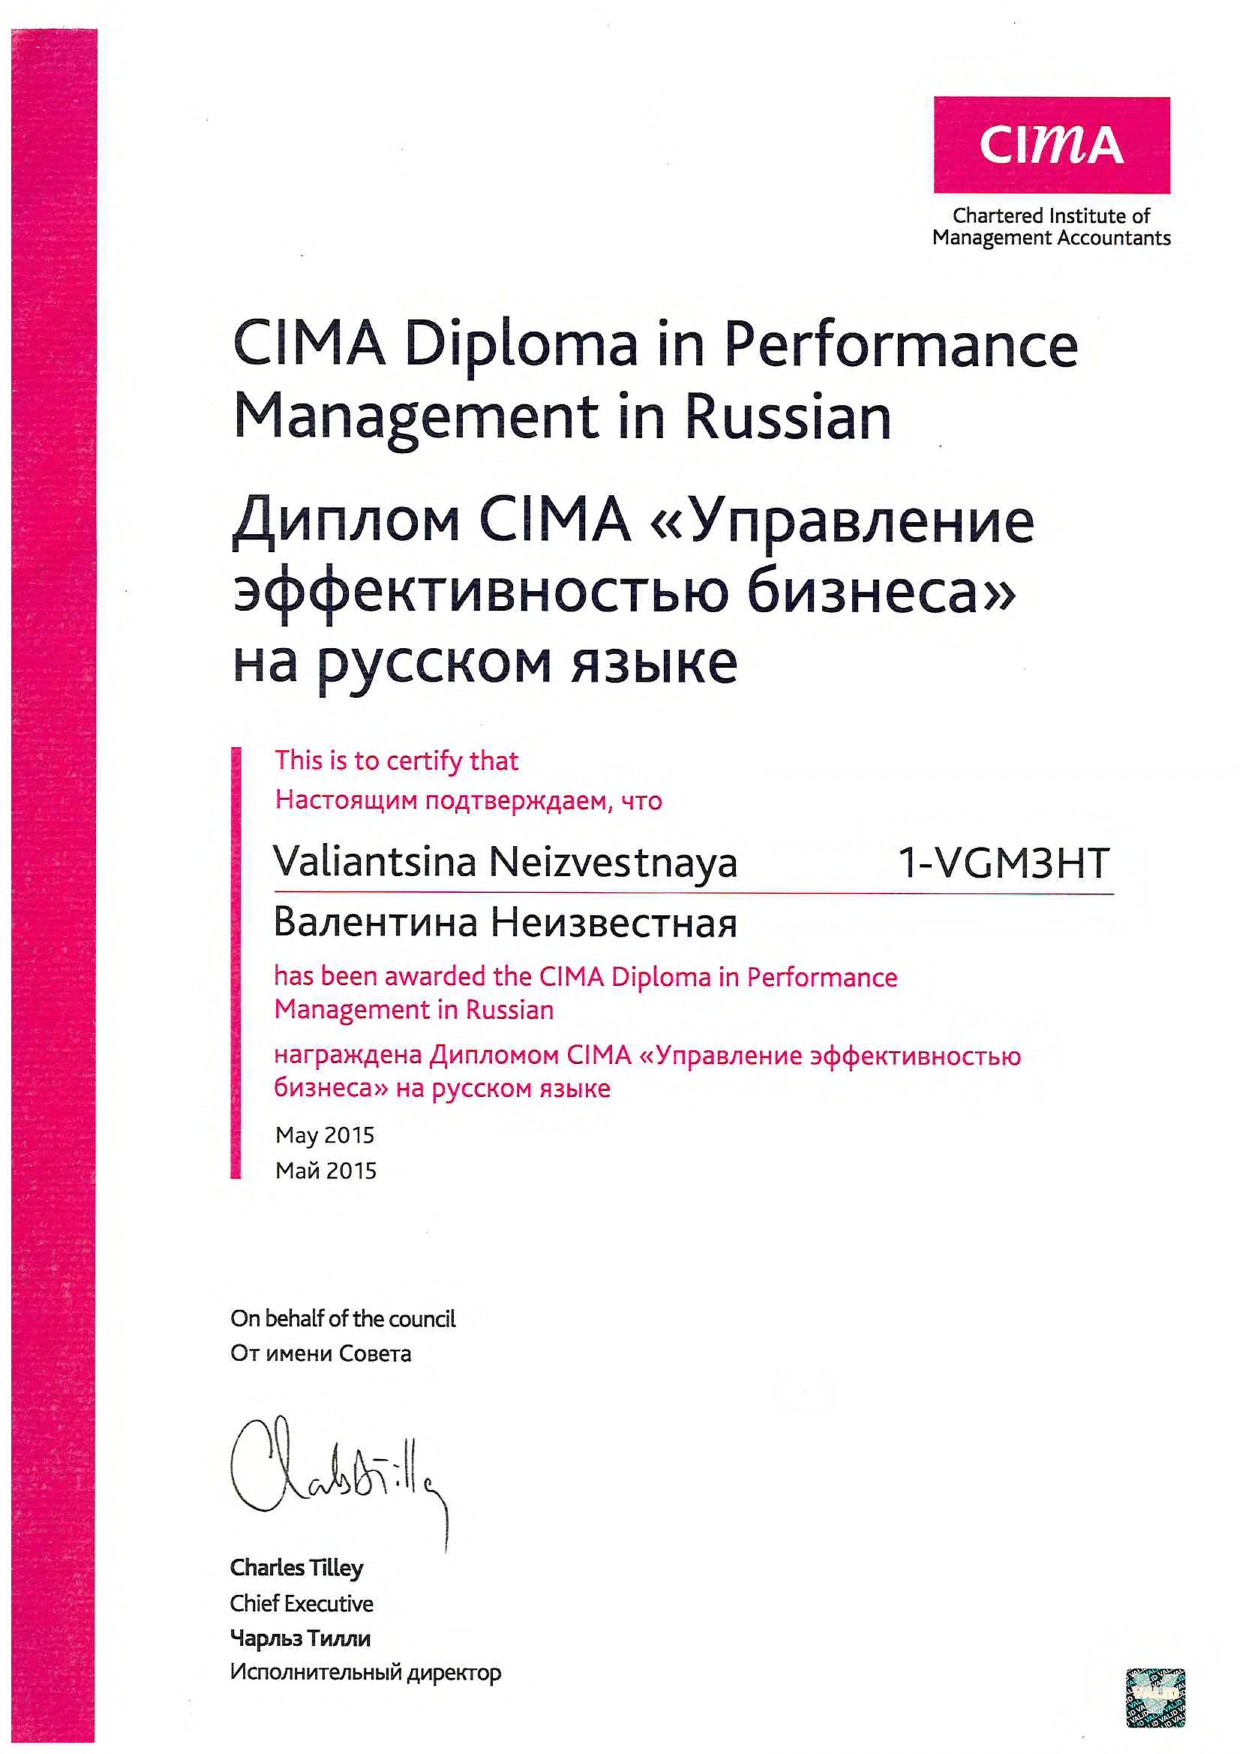 Диплом CIMA об управлении эффективностью бизнеса Валентины Неизвестной.